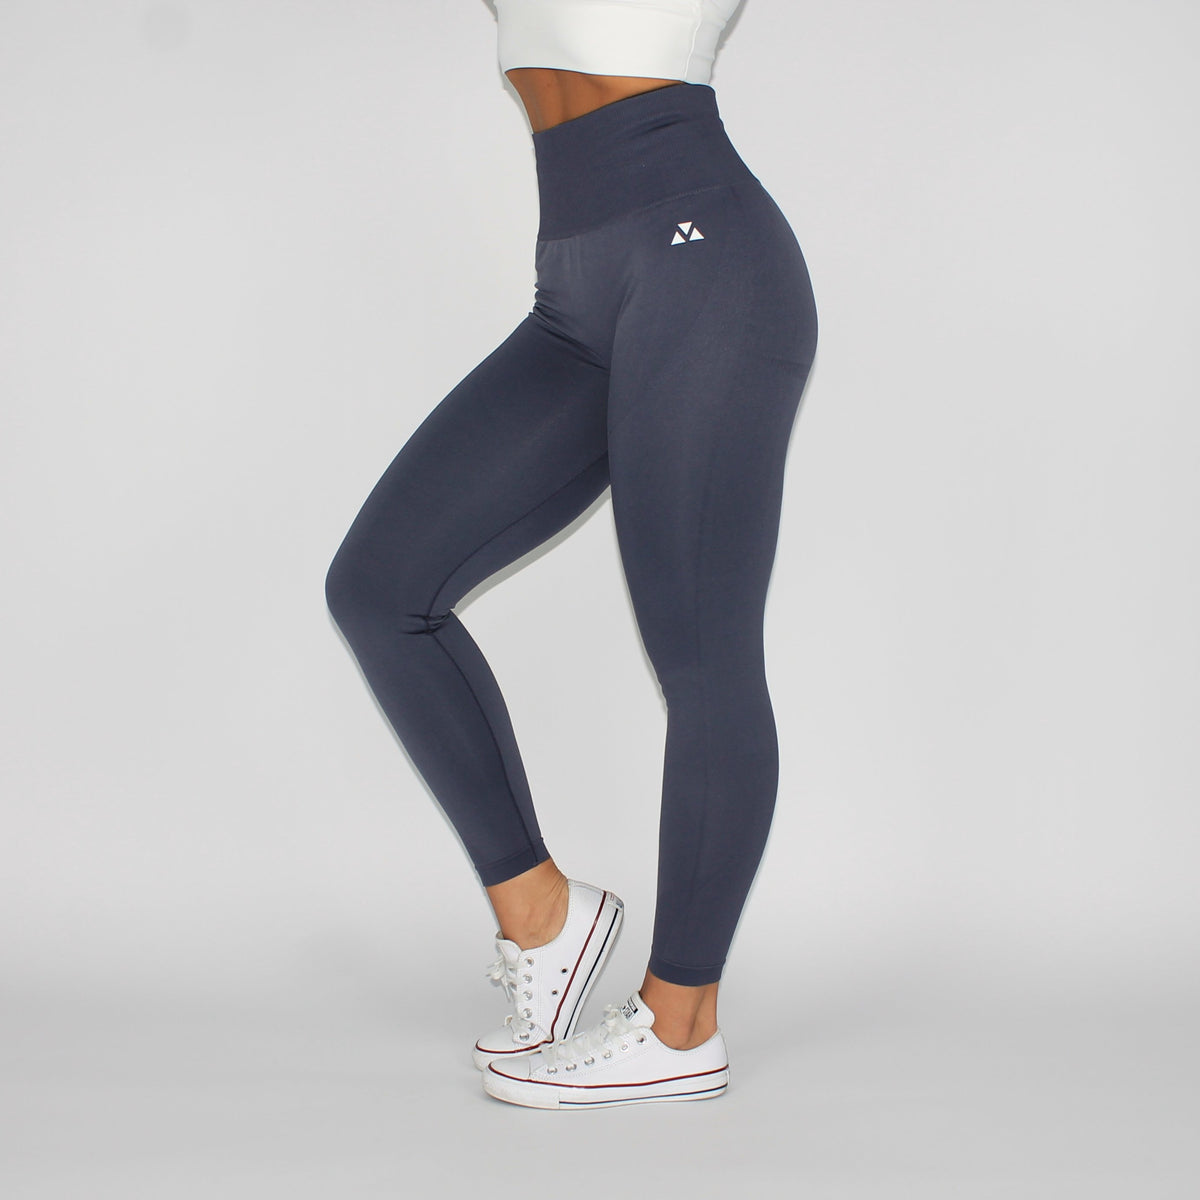 http://gymlandsportswear.com/cdn/shop/products/unleash-your-power-seamless-leggings-grey-left-side_1200x1200.jpg?v=1623388344